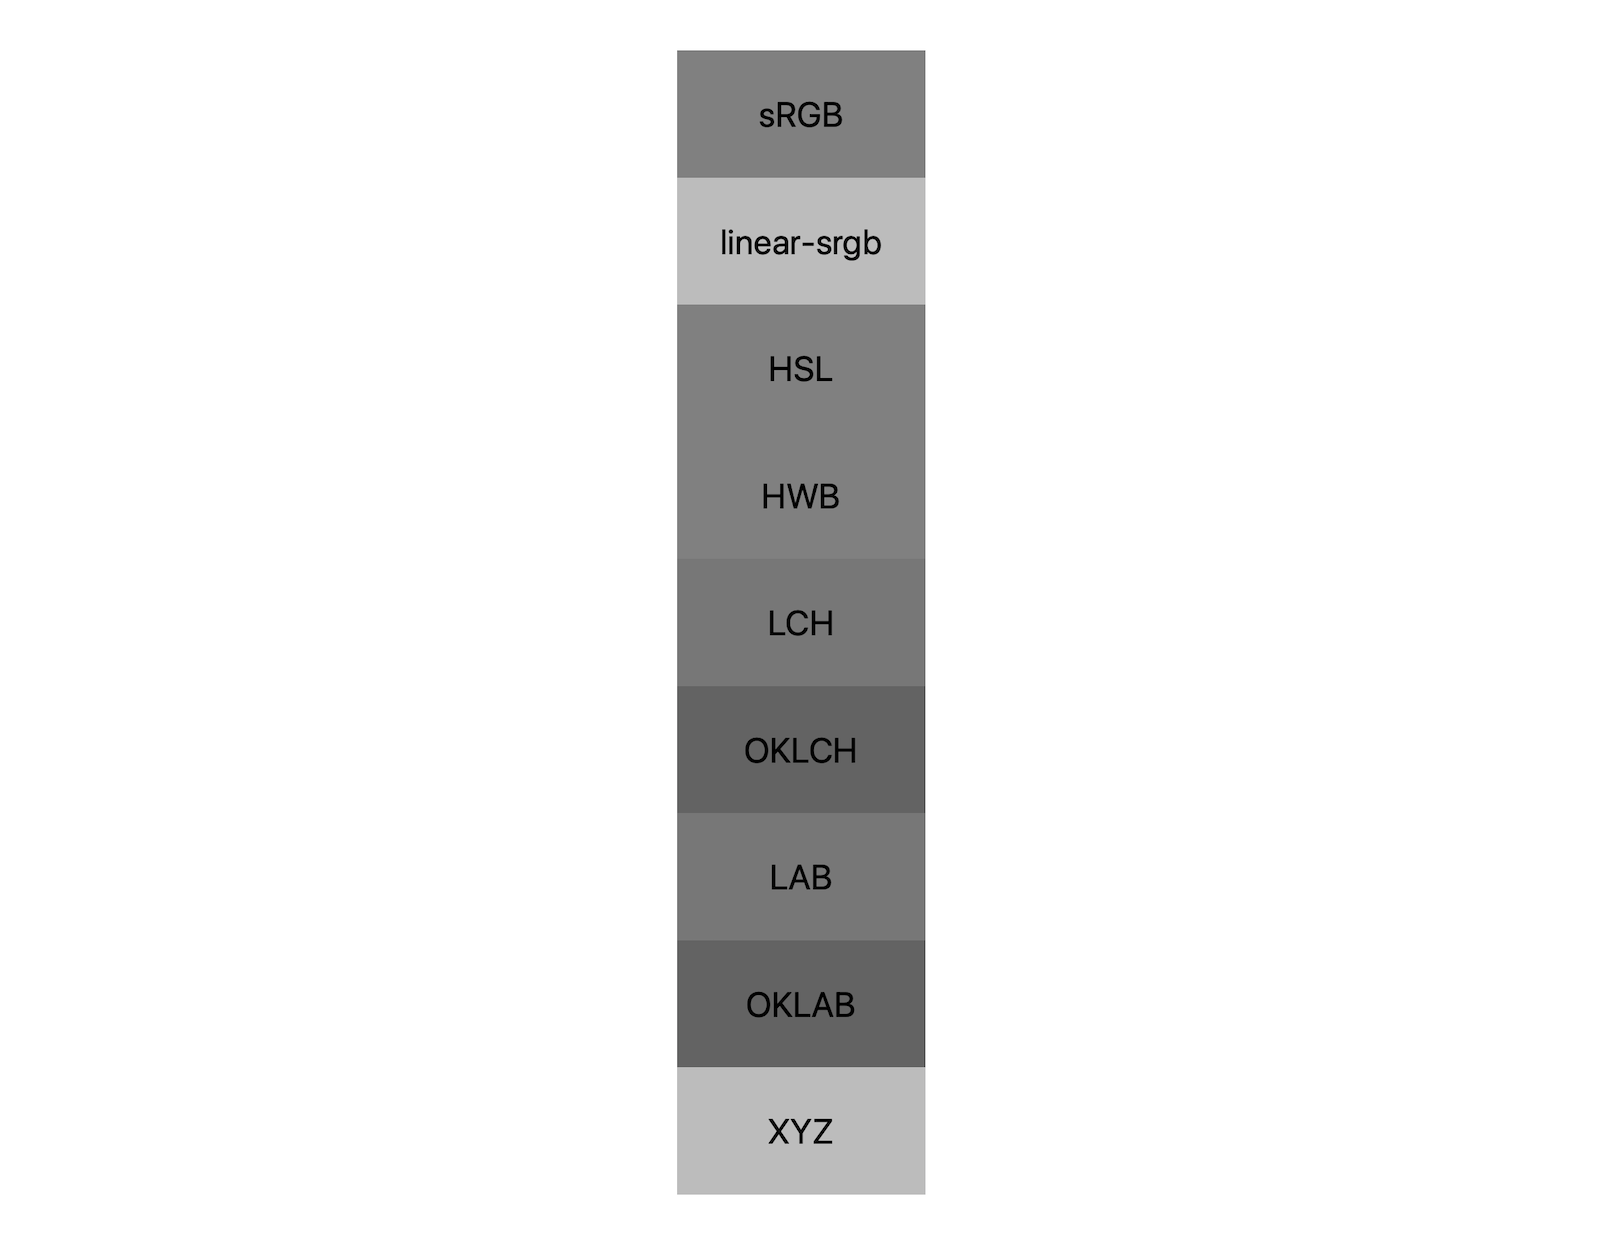 7 Farbräume (srgb, linear-srgb, lch, oklch, Lab, oklab, xyz) zeigen jeweils die Ergebnisse einer Kombination von Schwarz und Weiß. Es werden etwa fünf verschiedene Schattierungen gezeigt, was zeigt, dass sich jeder Farbraum sogar anders zu Grau vermischt.